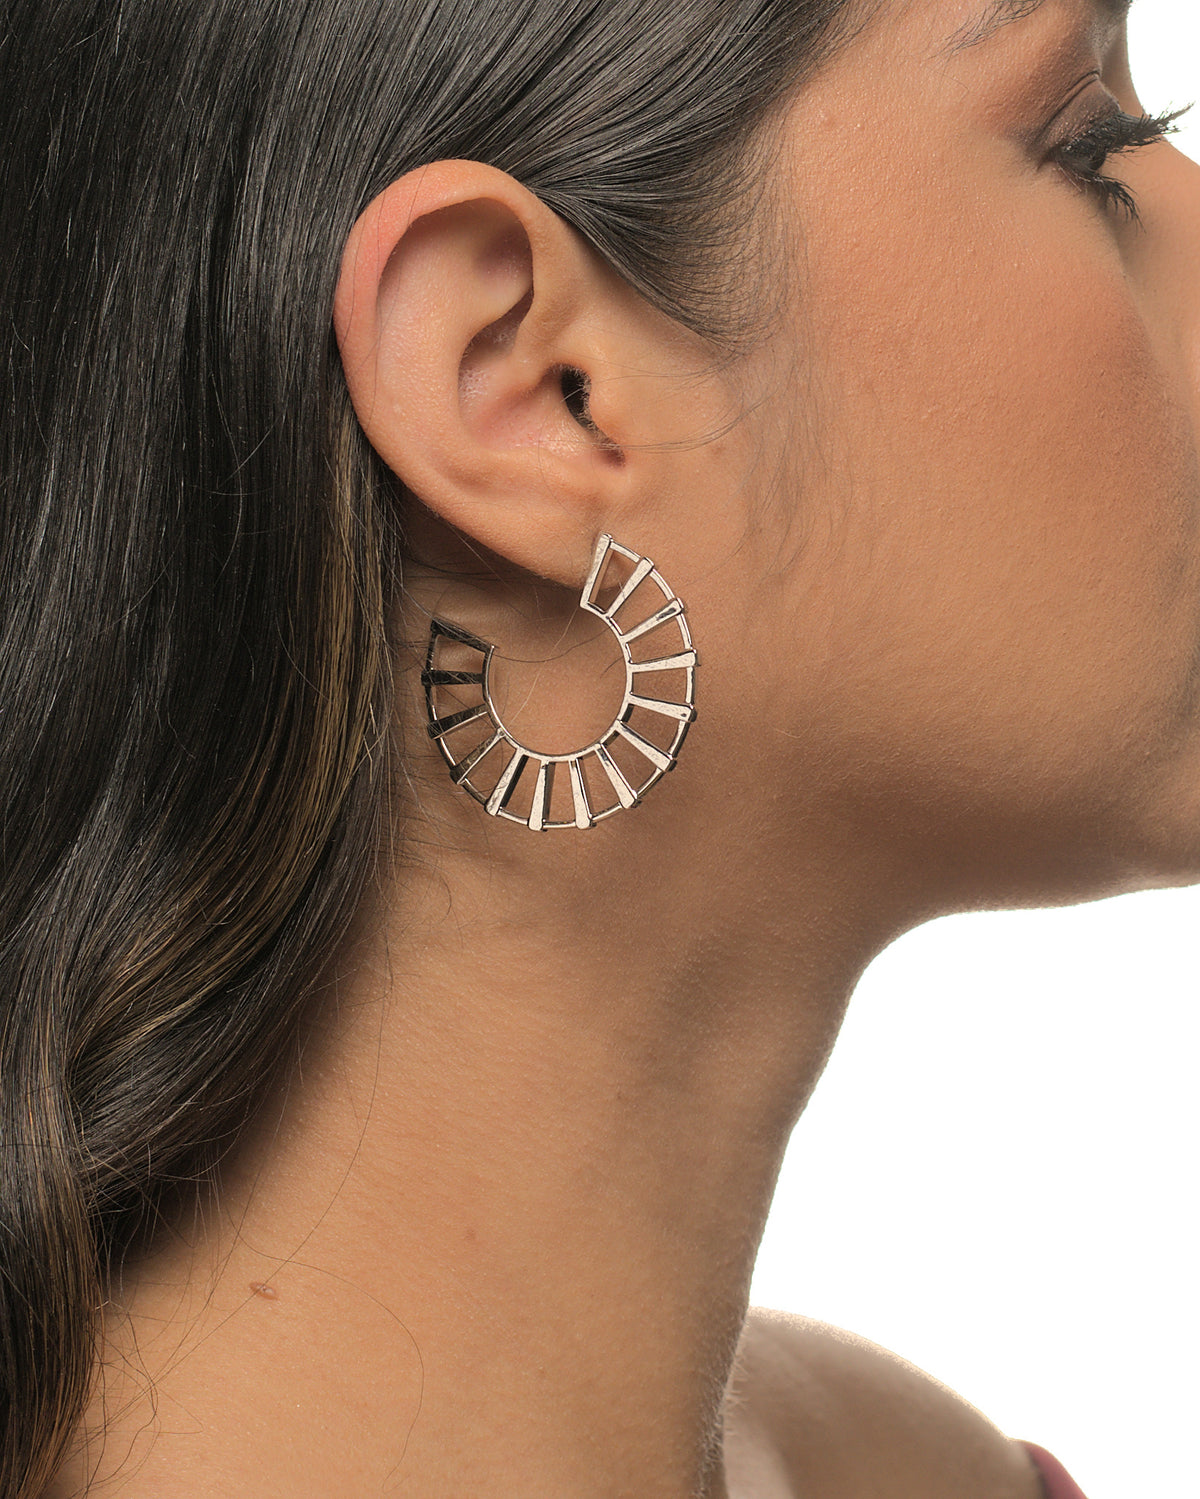 Michelle fan earrings